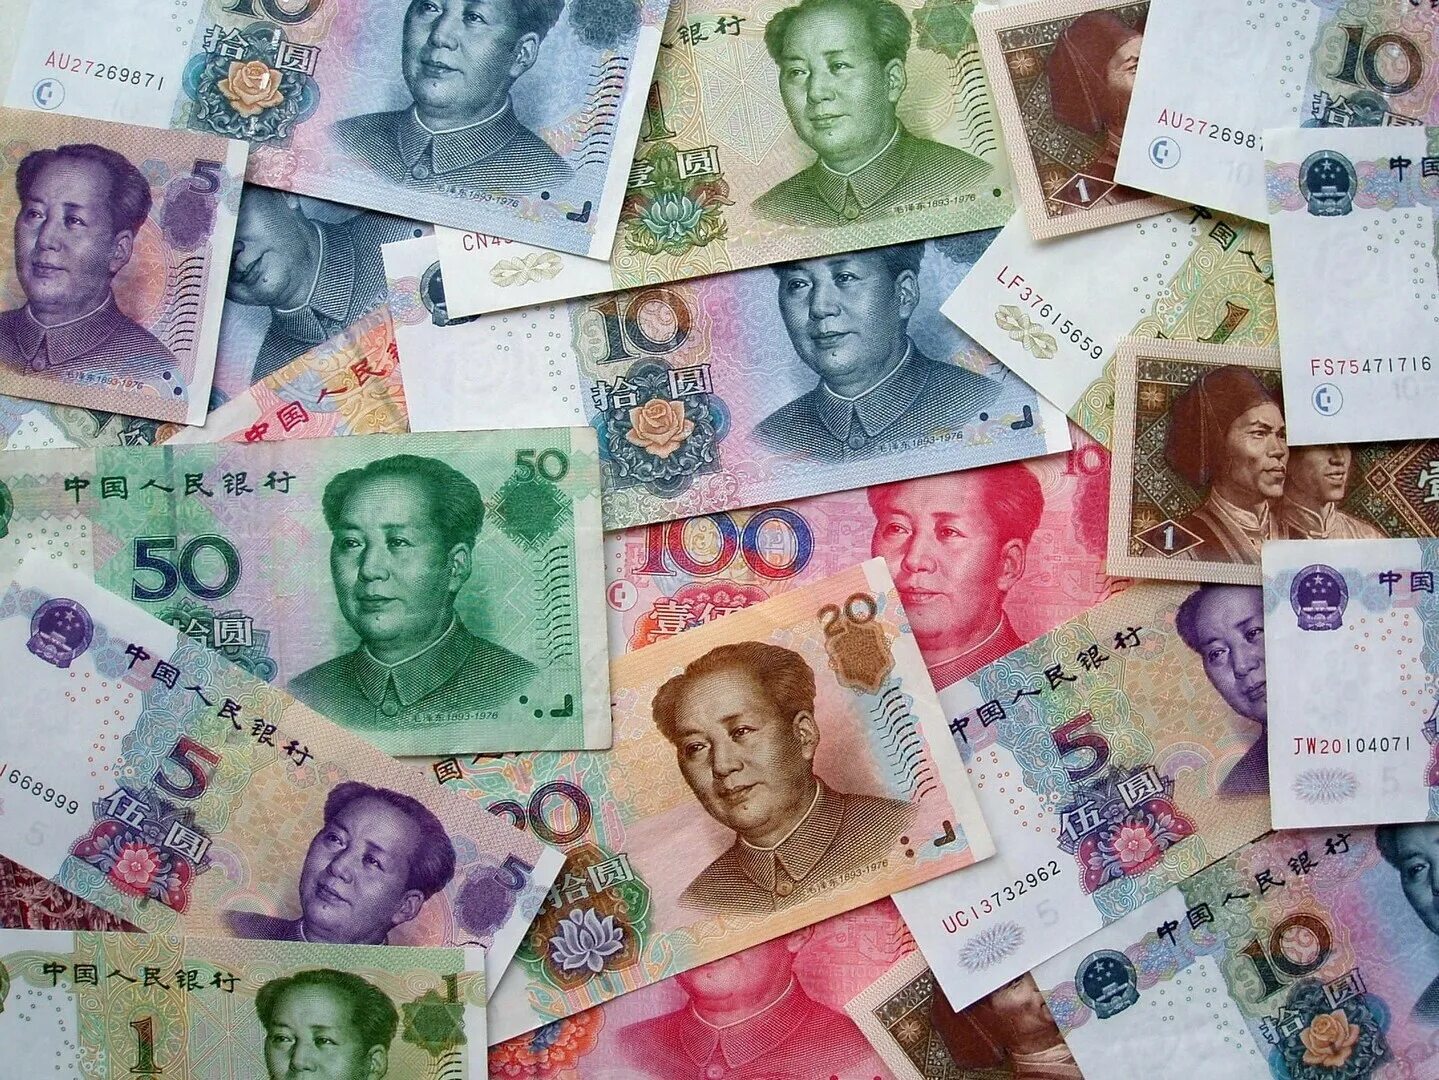 Китайский юань. Китайская валюта юань. Китайский юань купюры. Юань (валюта).